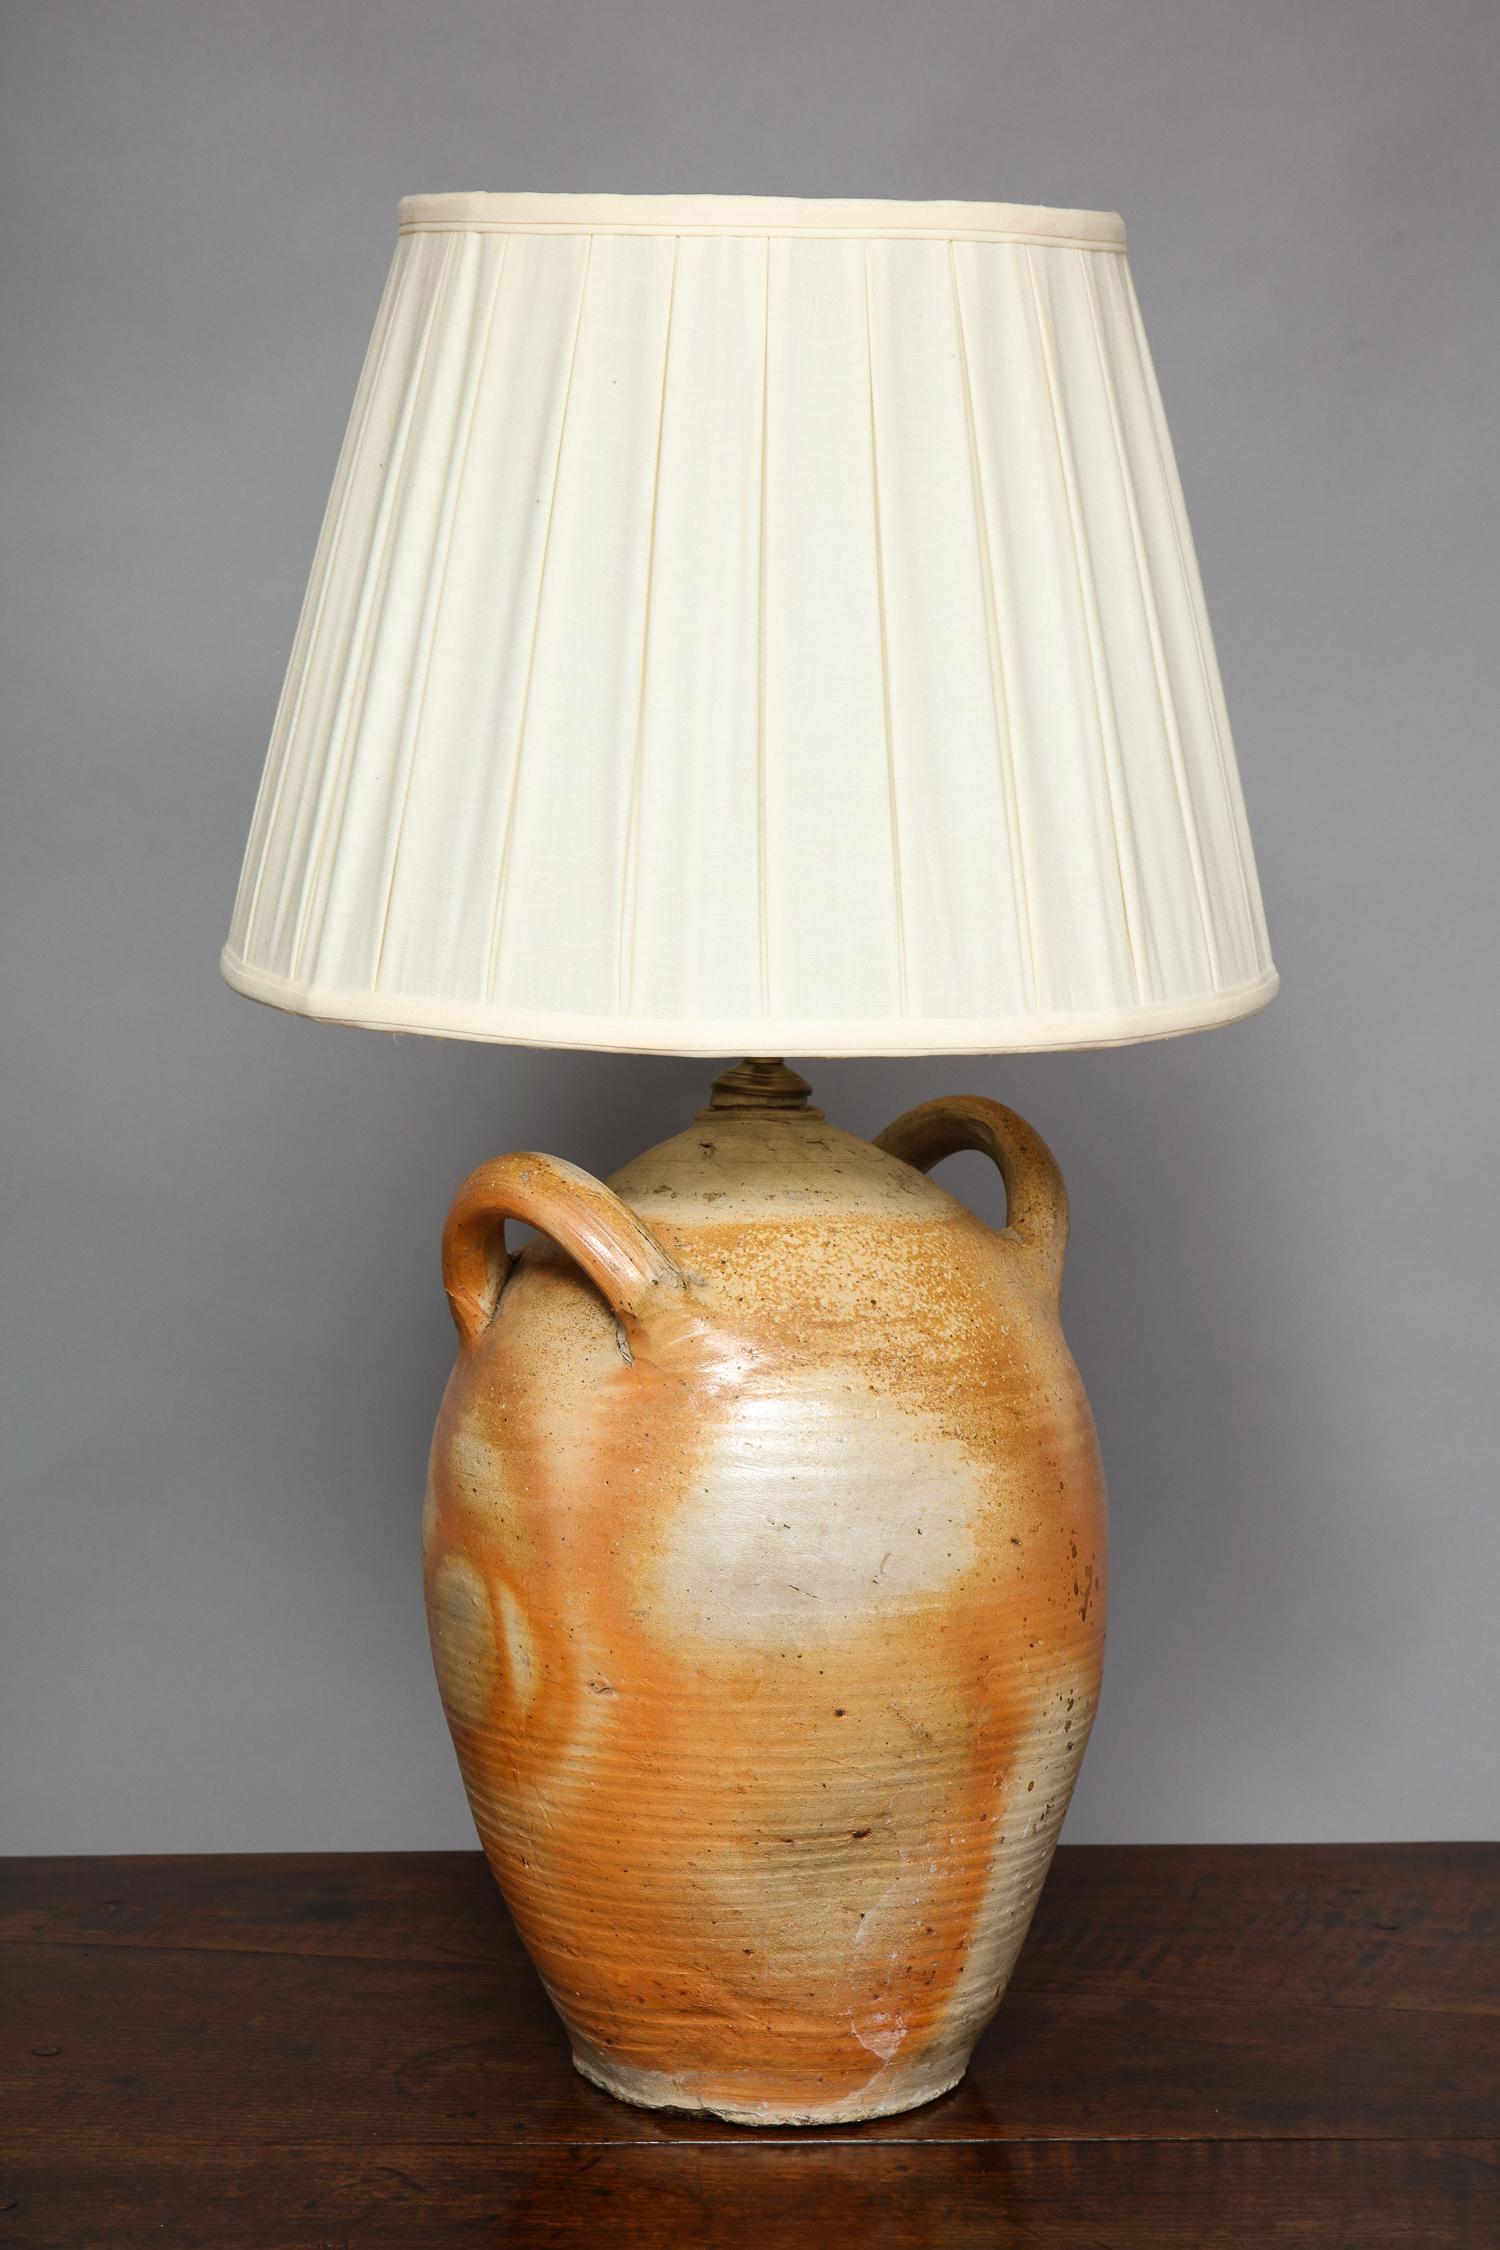 Guter Steingutkrug mit zwei Henkeln aus dem 19. Jahrhundert, jetzt als Lampe, mit ungewöhnlich rostfarbener und grauer Keramikoberfläche und ausgezeichneter Form.  Schirm nicht enthalten.